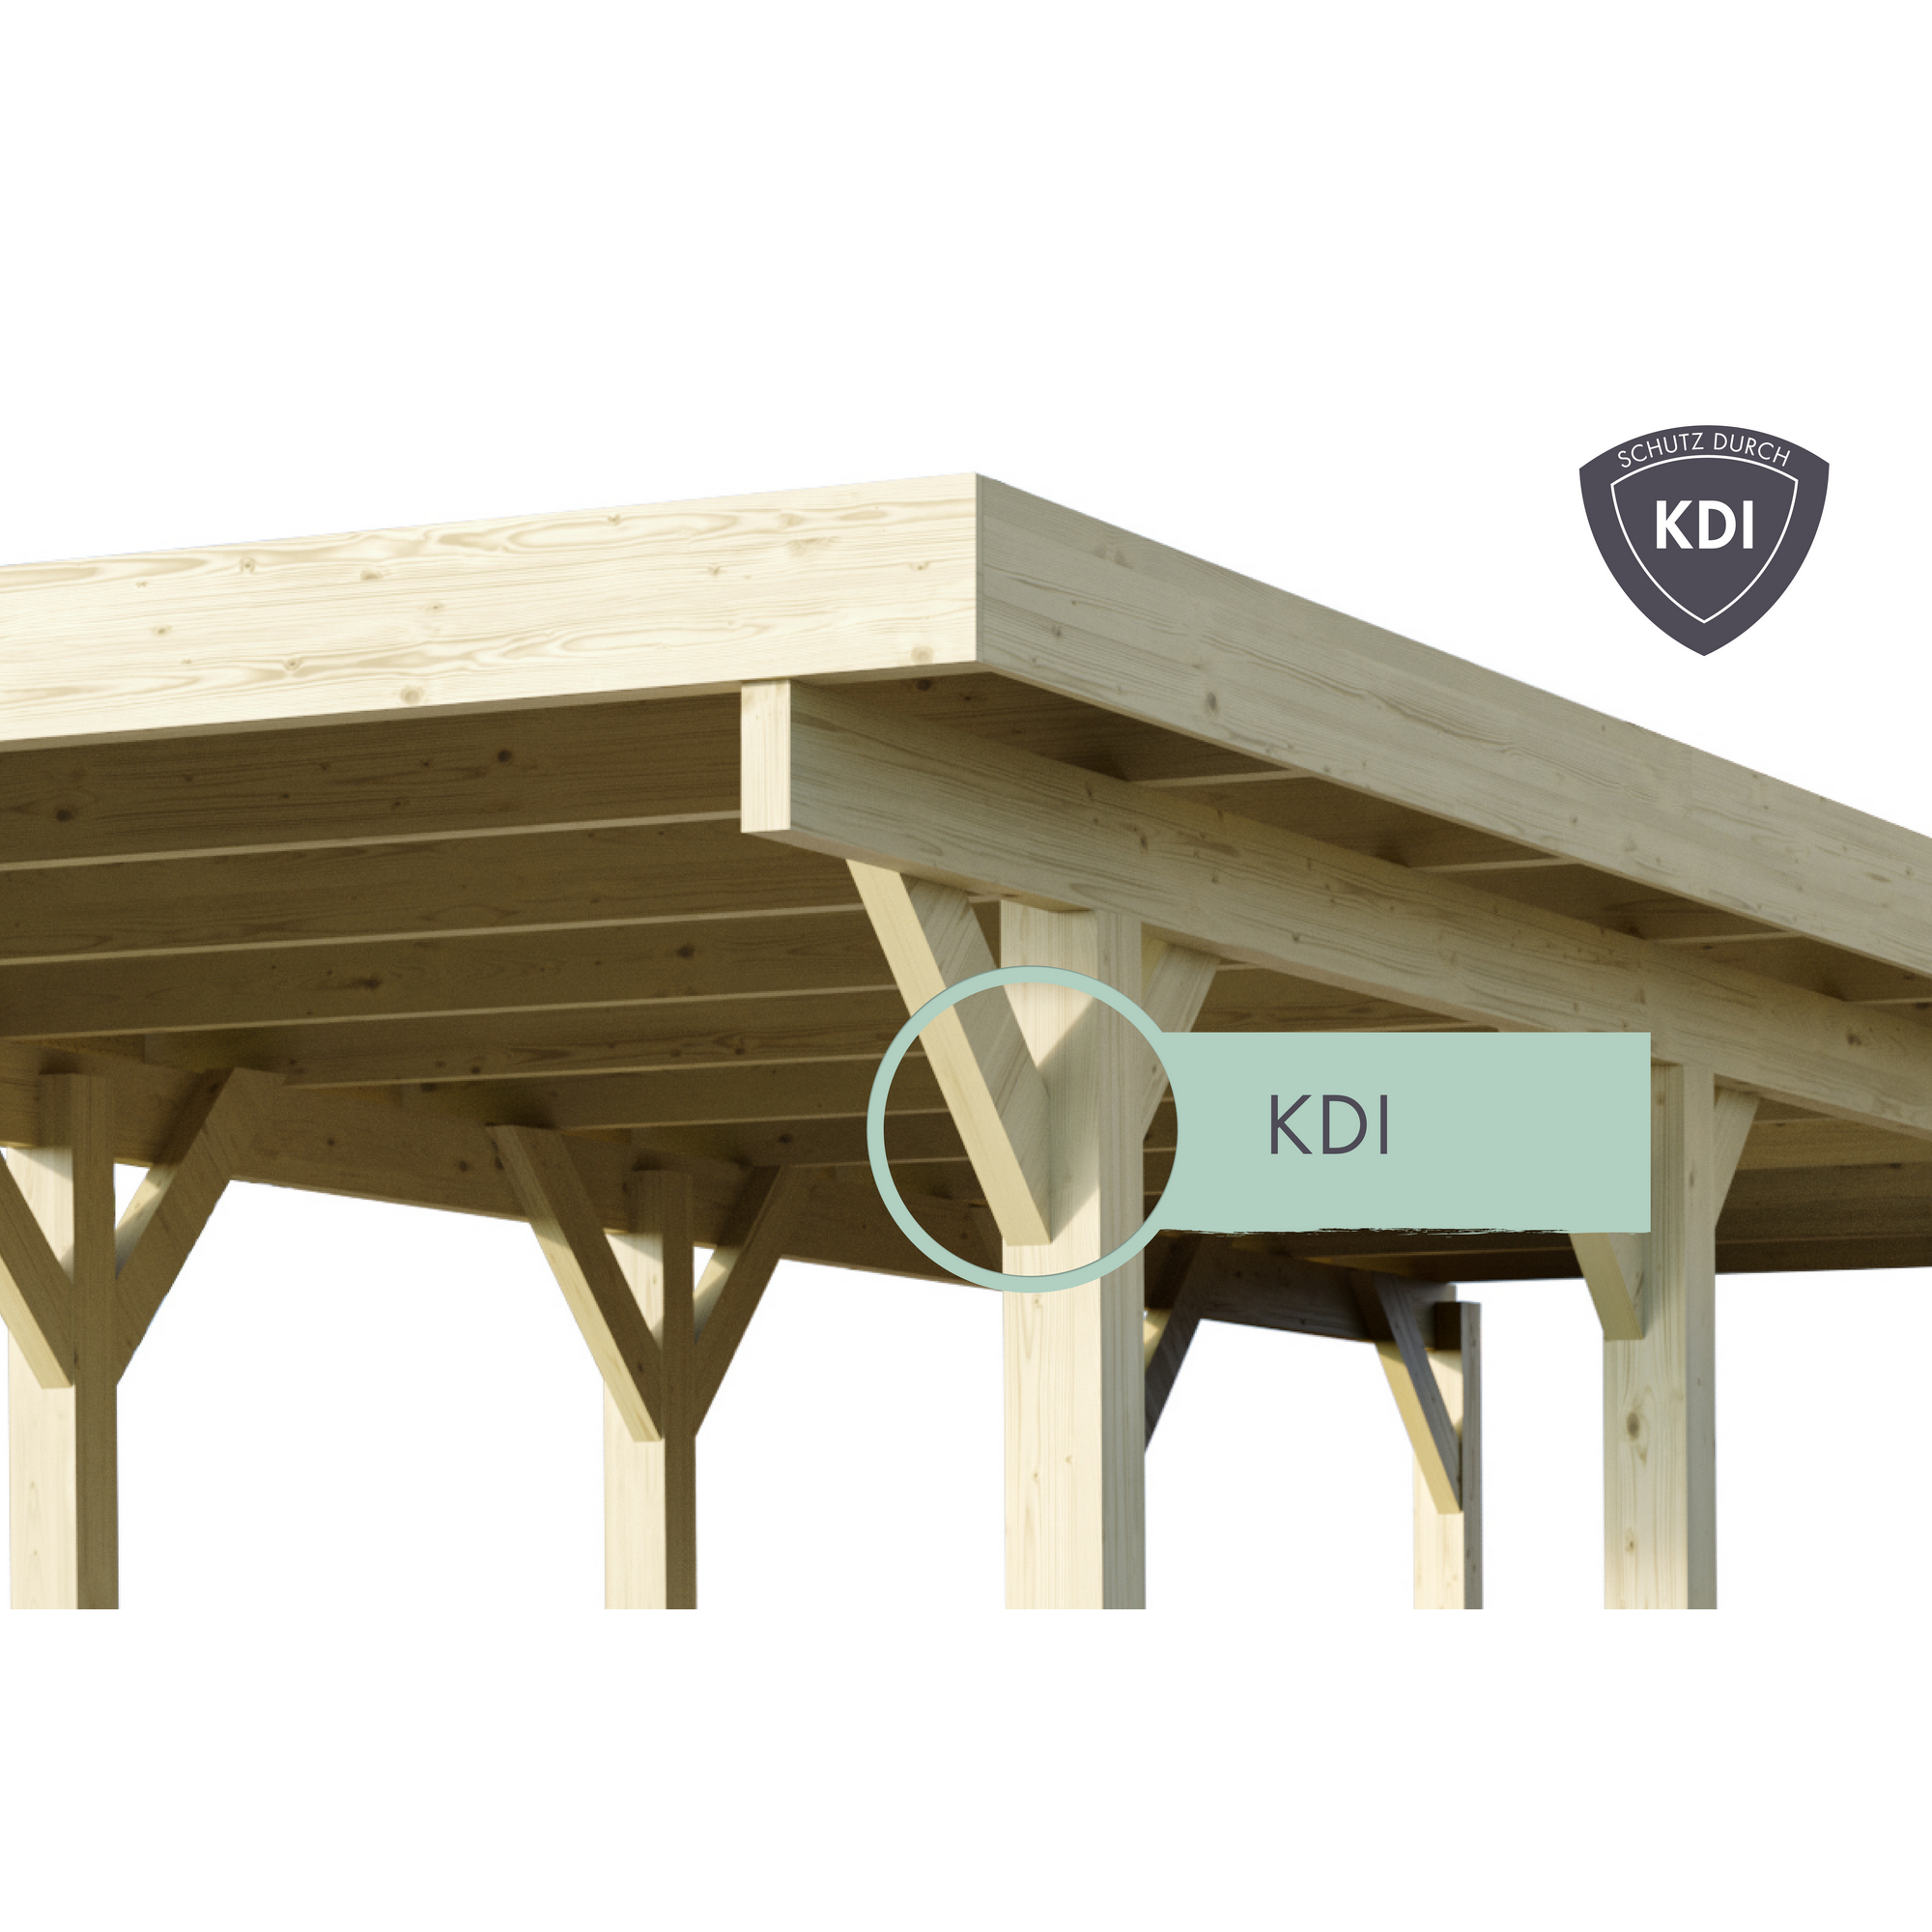 Doppelcarport 'Carlos 1' Kiefer PVC-Dach 480 x 598 x 237 cm + product picture